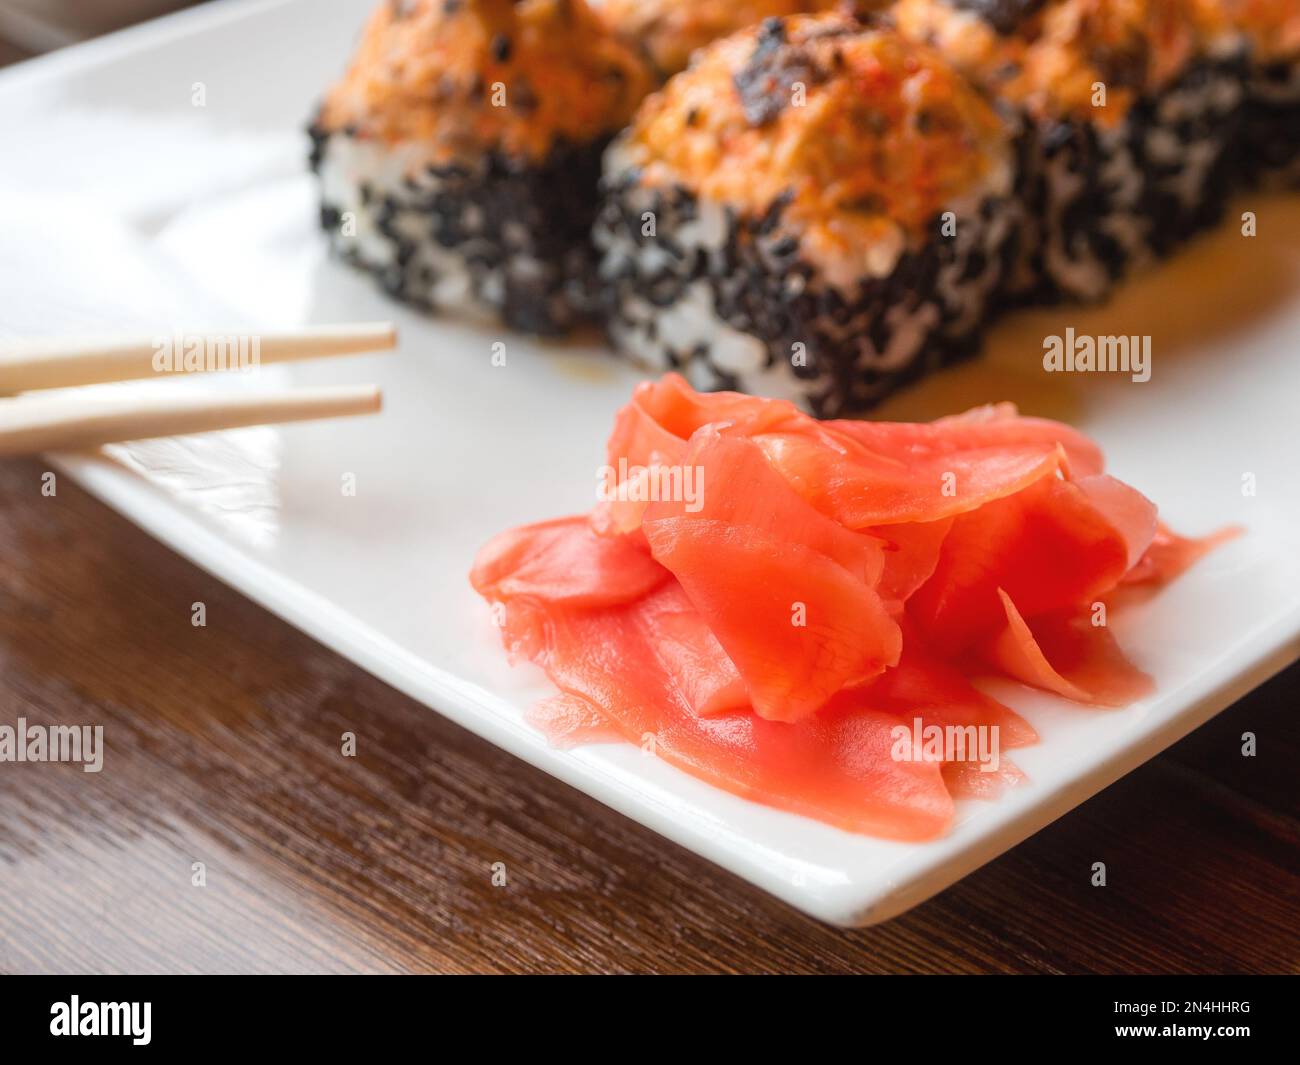 Zenzero e involtini sottaceto con anguilla, funghi shiitake, sesamo nero, salsa piccante, salsa unagi. Cucina asiatica, piatto tradizionale - sushi. Foto Stock